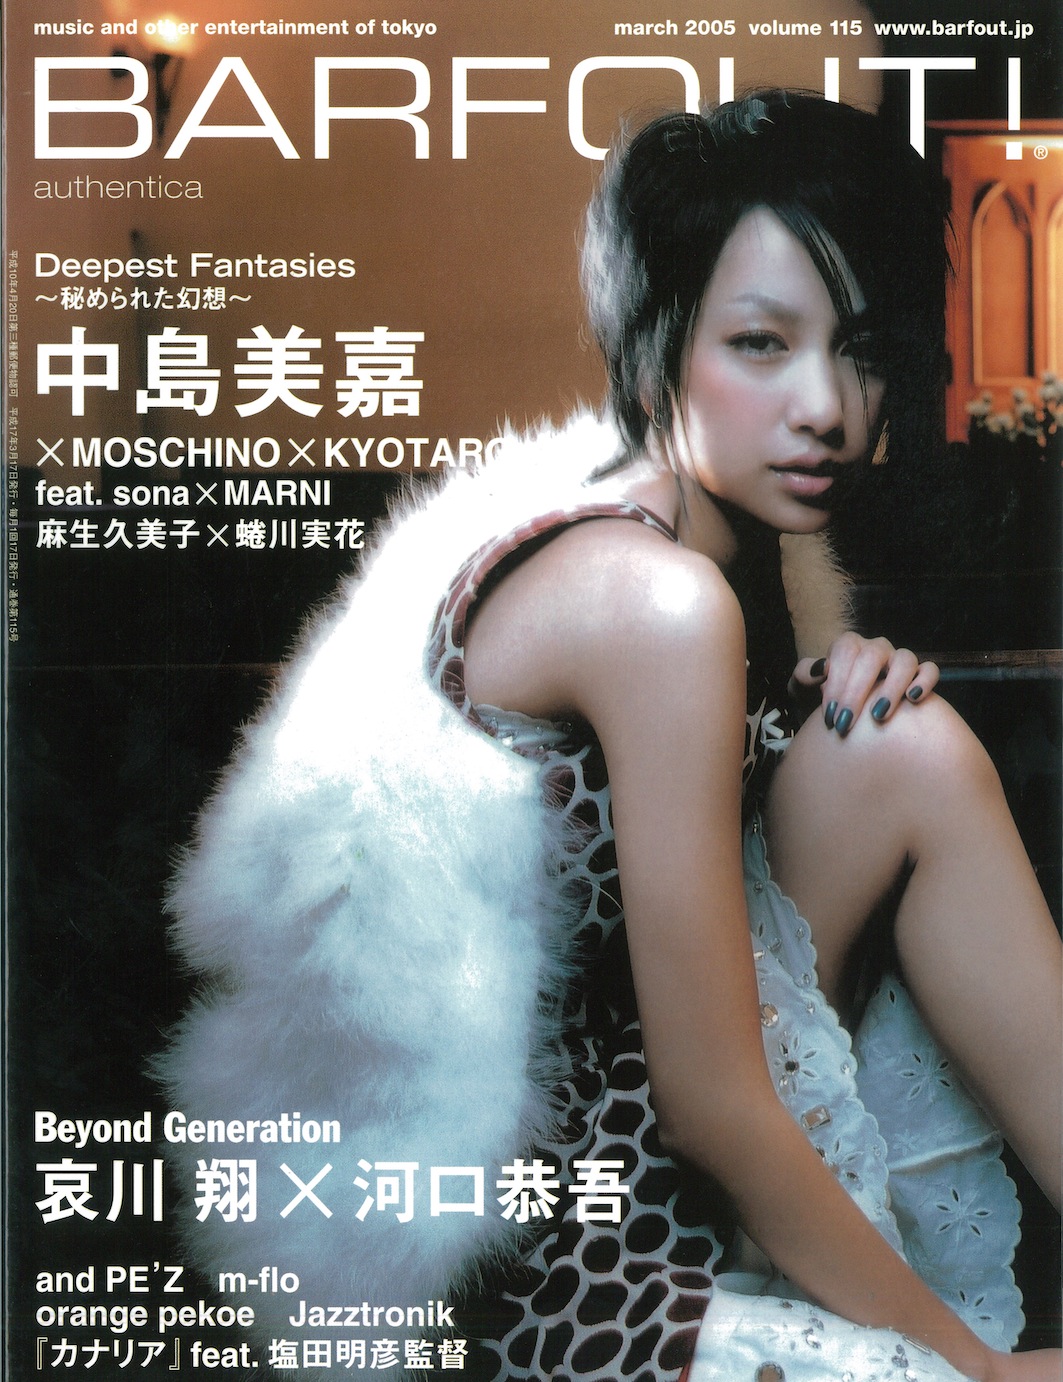 MARCH 2005 VOLUME 115